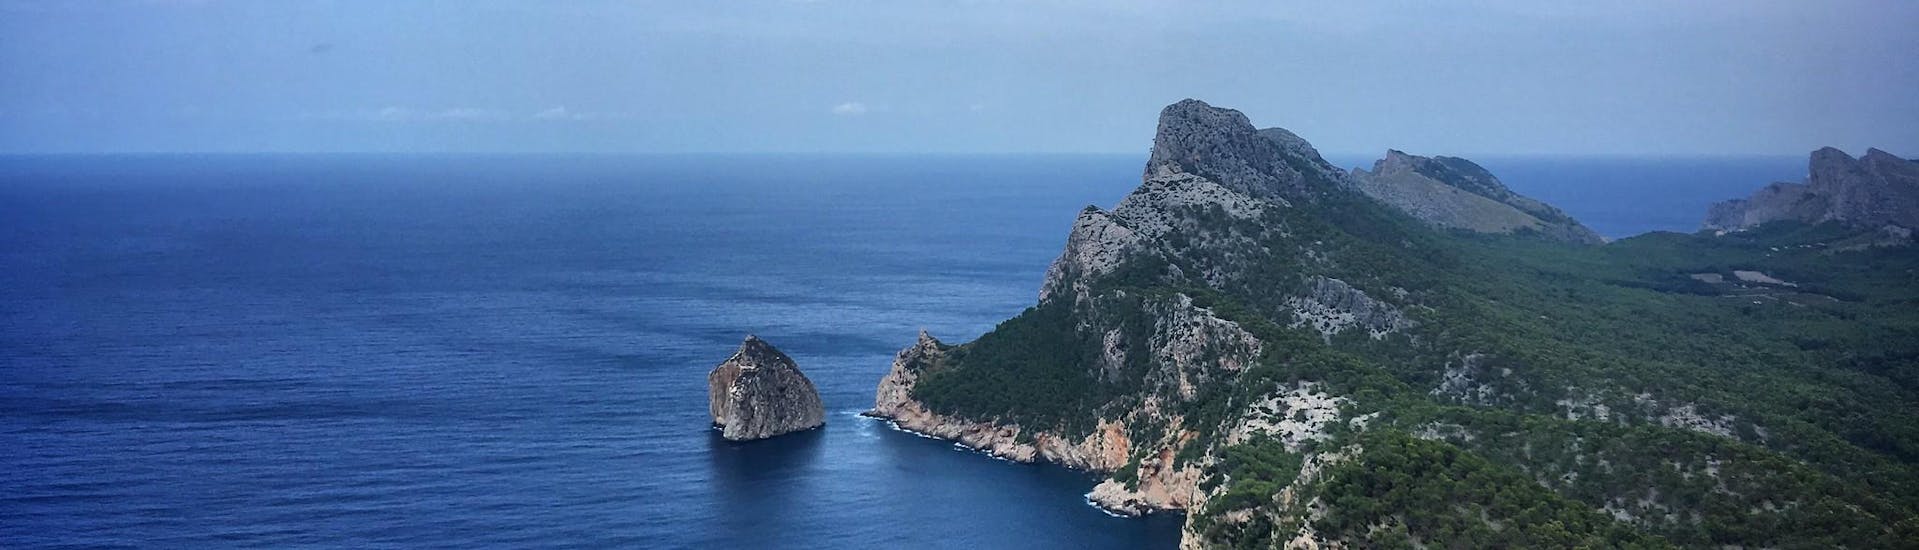 Blick auf das Cap Formentor von einer Bootsfahrt auf Mallorca.